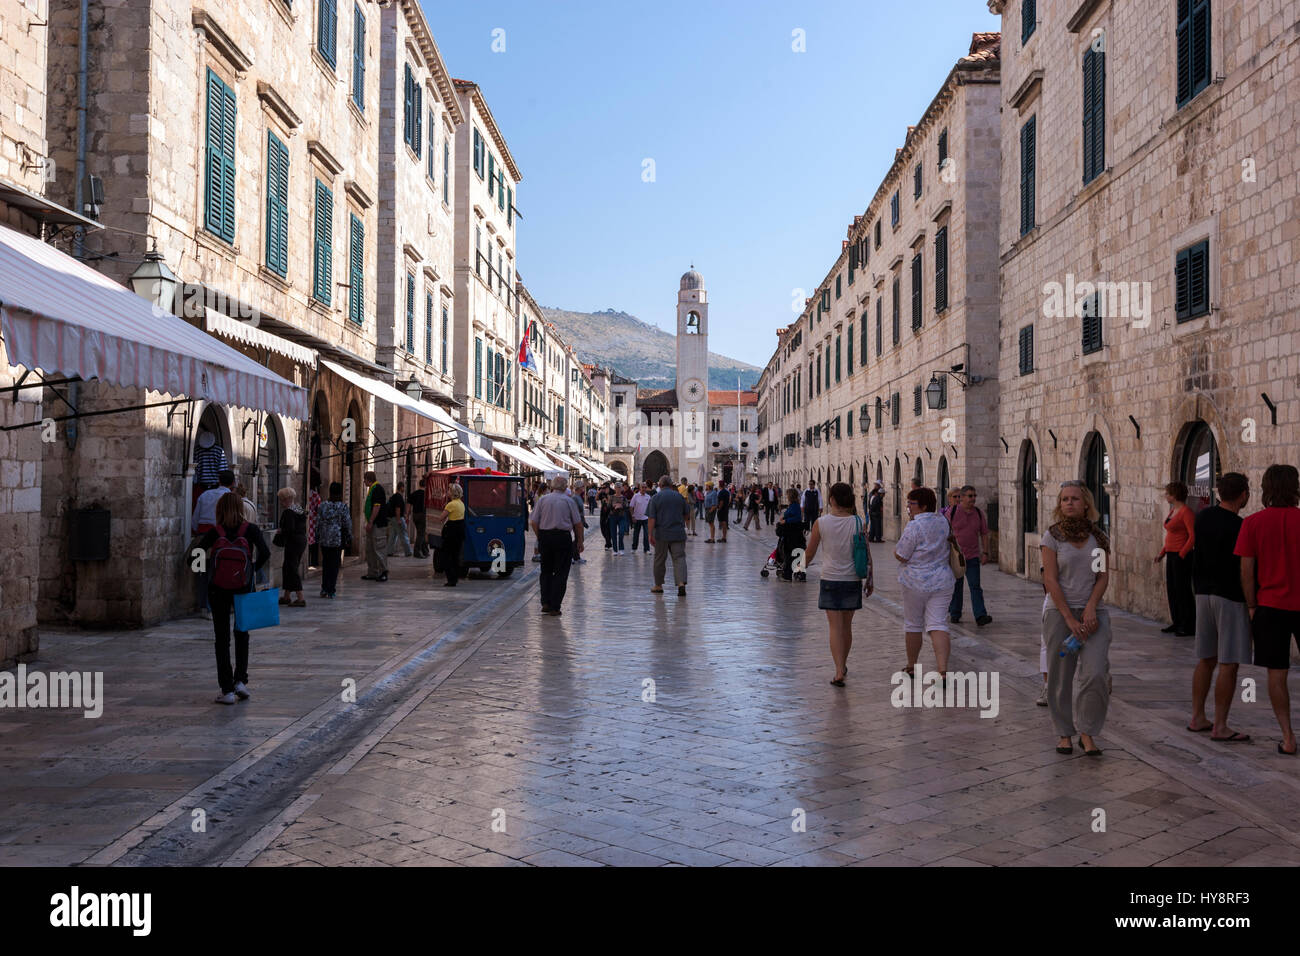 Stradun de Dubrovnik, de la rue piétonne pavée de calcaire, est la rue principale de Dubrovnik-Neretva, en Croatie Banque D'Images